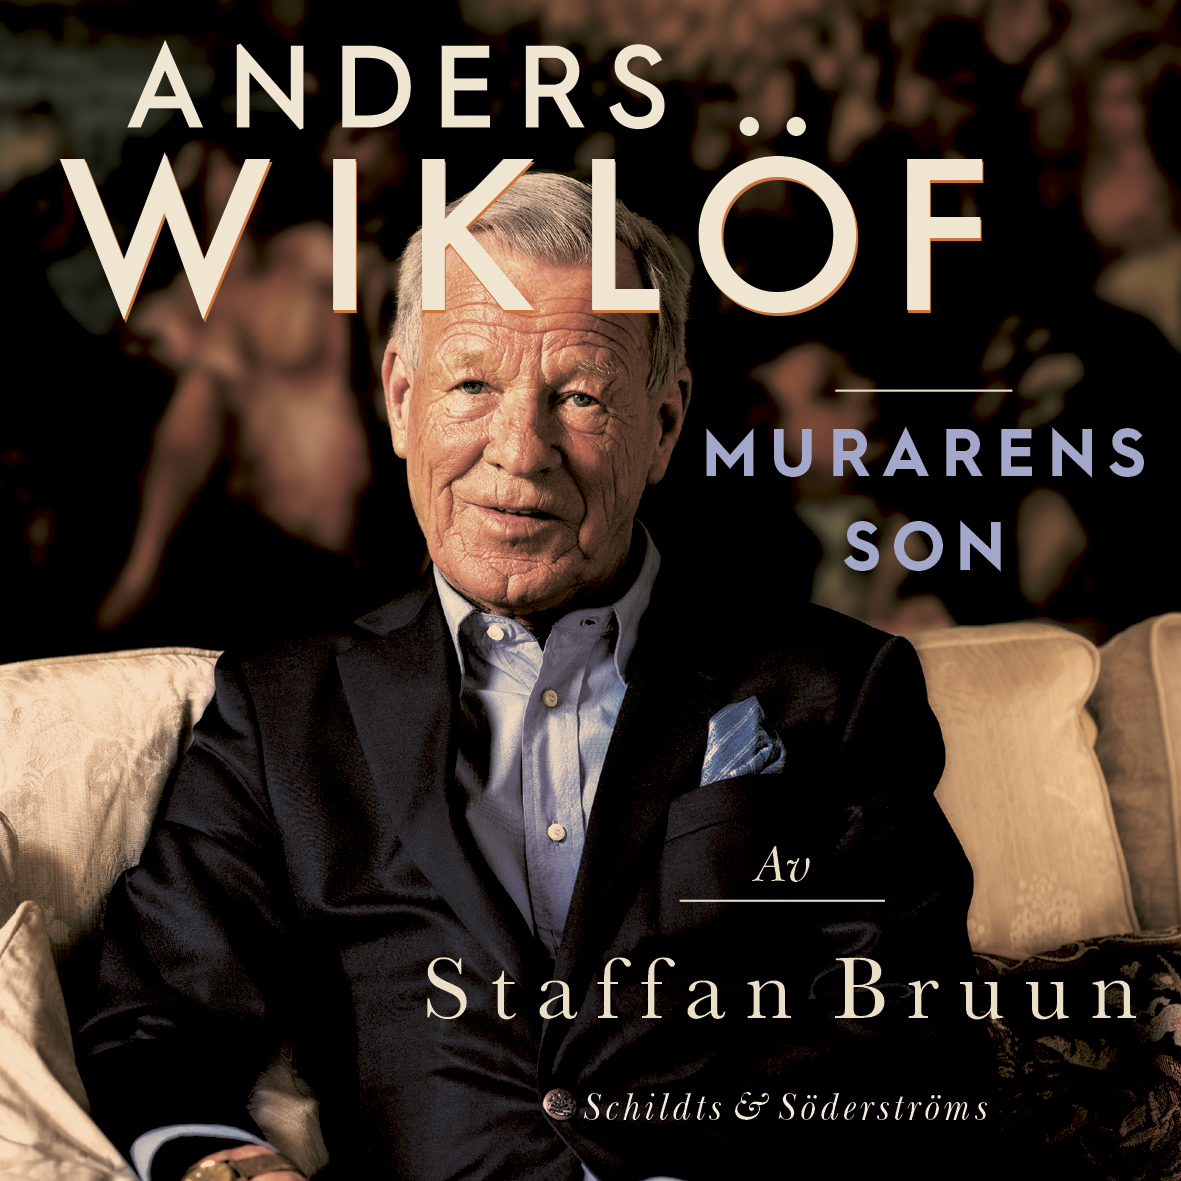 Bruun, Staffan - Anders Wiklöf, murarens son, audiobook